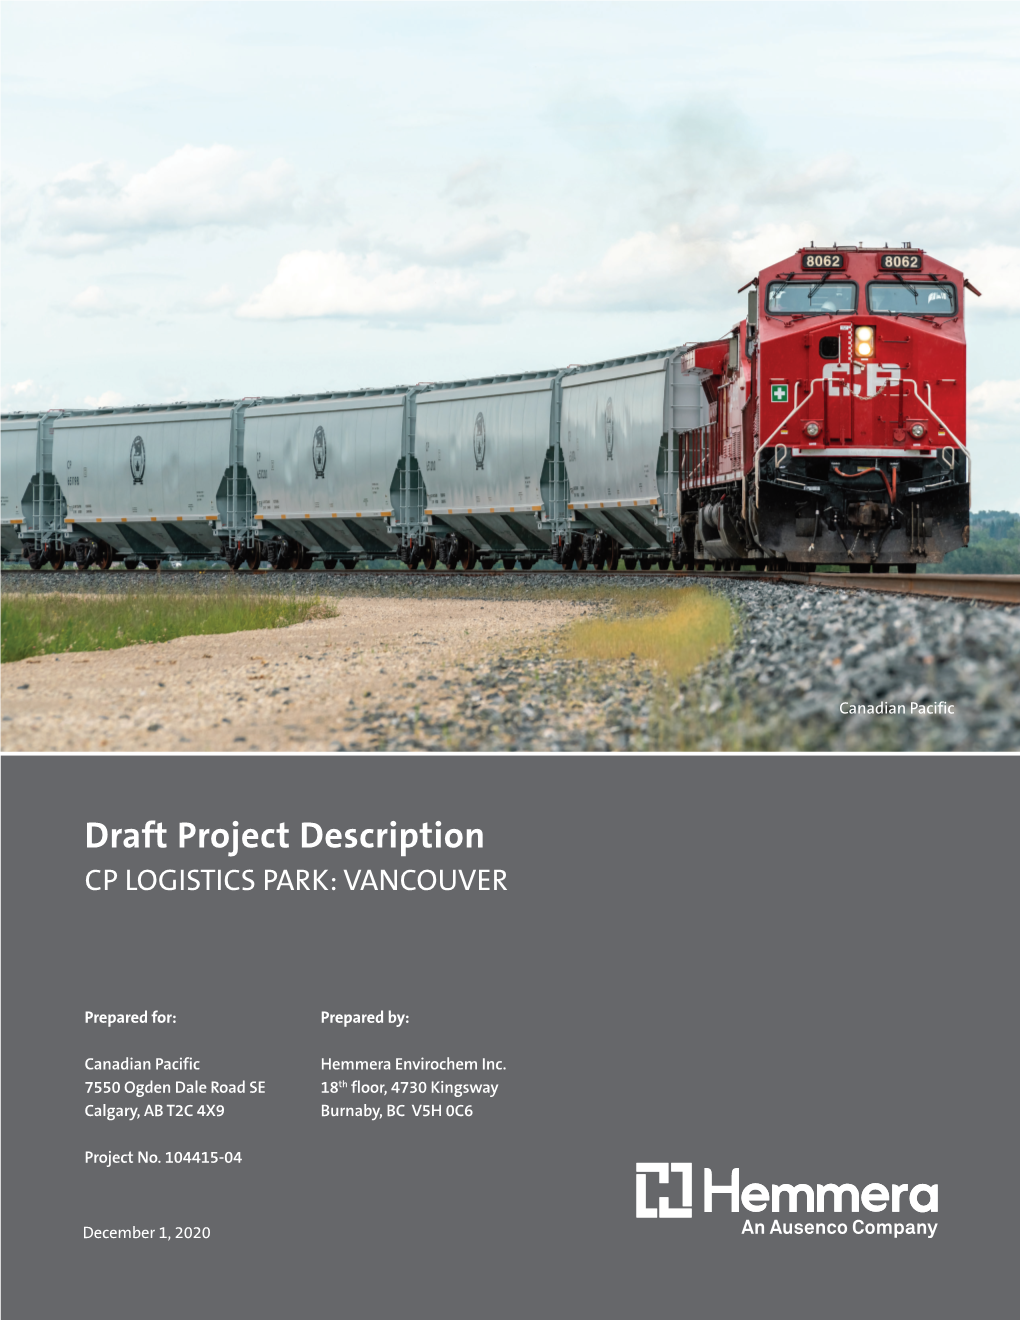 Draft Project Description, Cp Logistics Park: Vancouver Project No